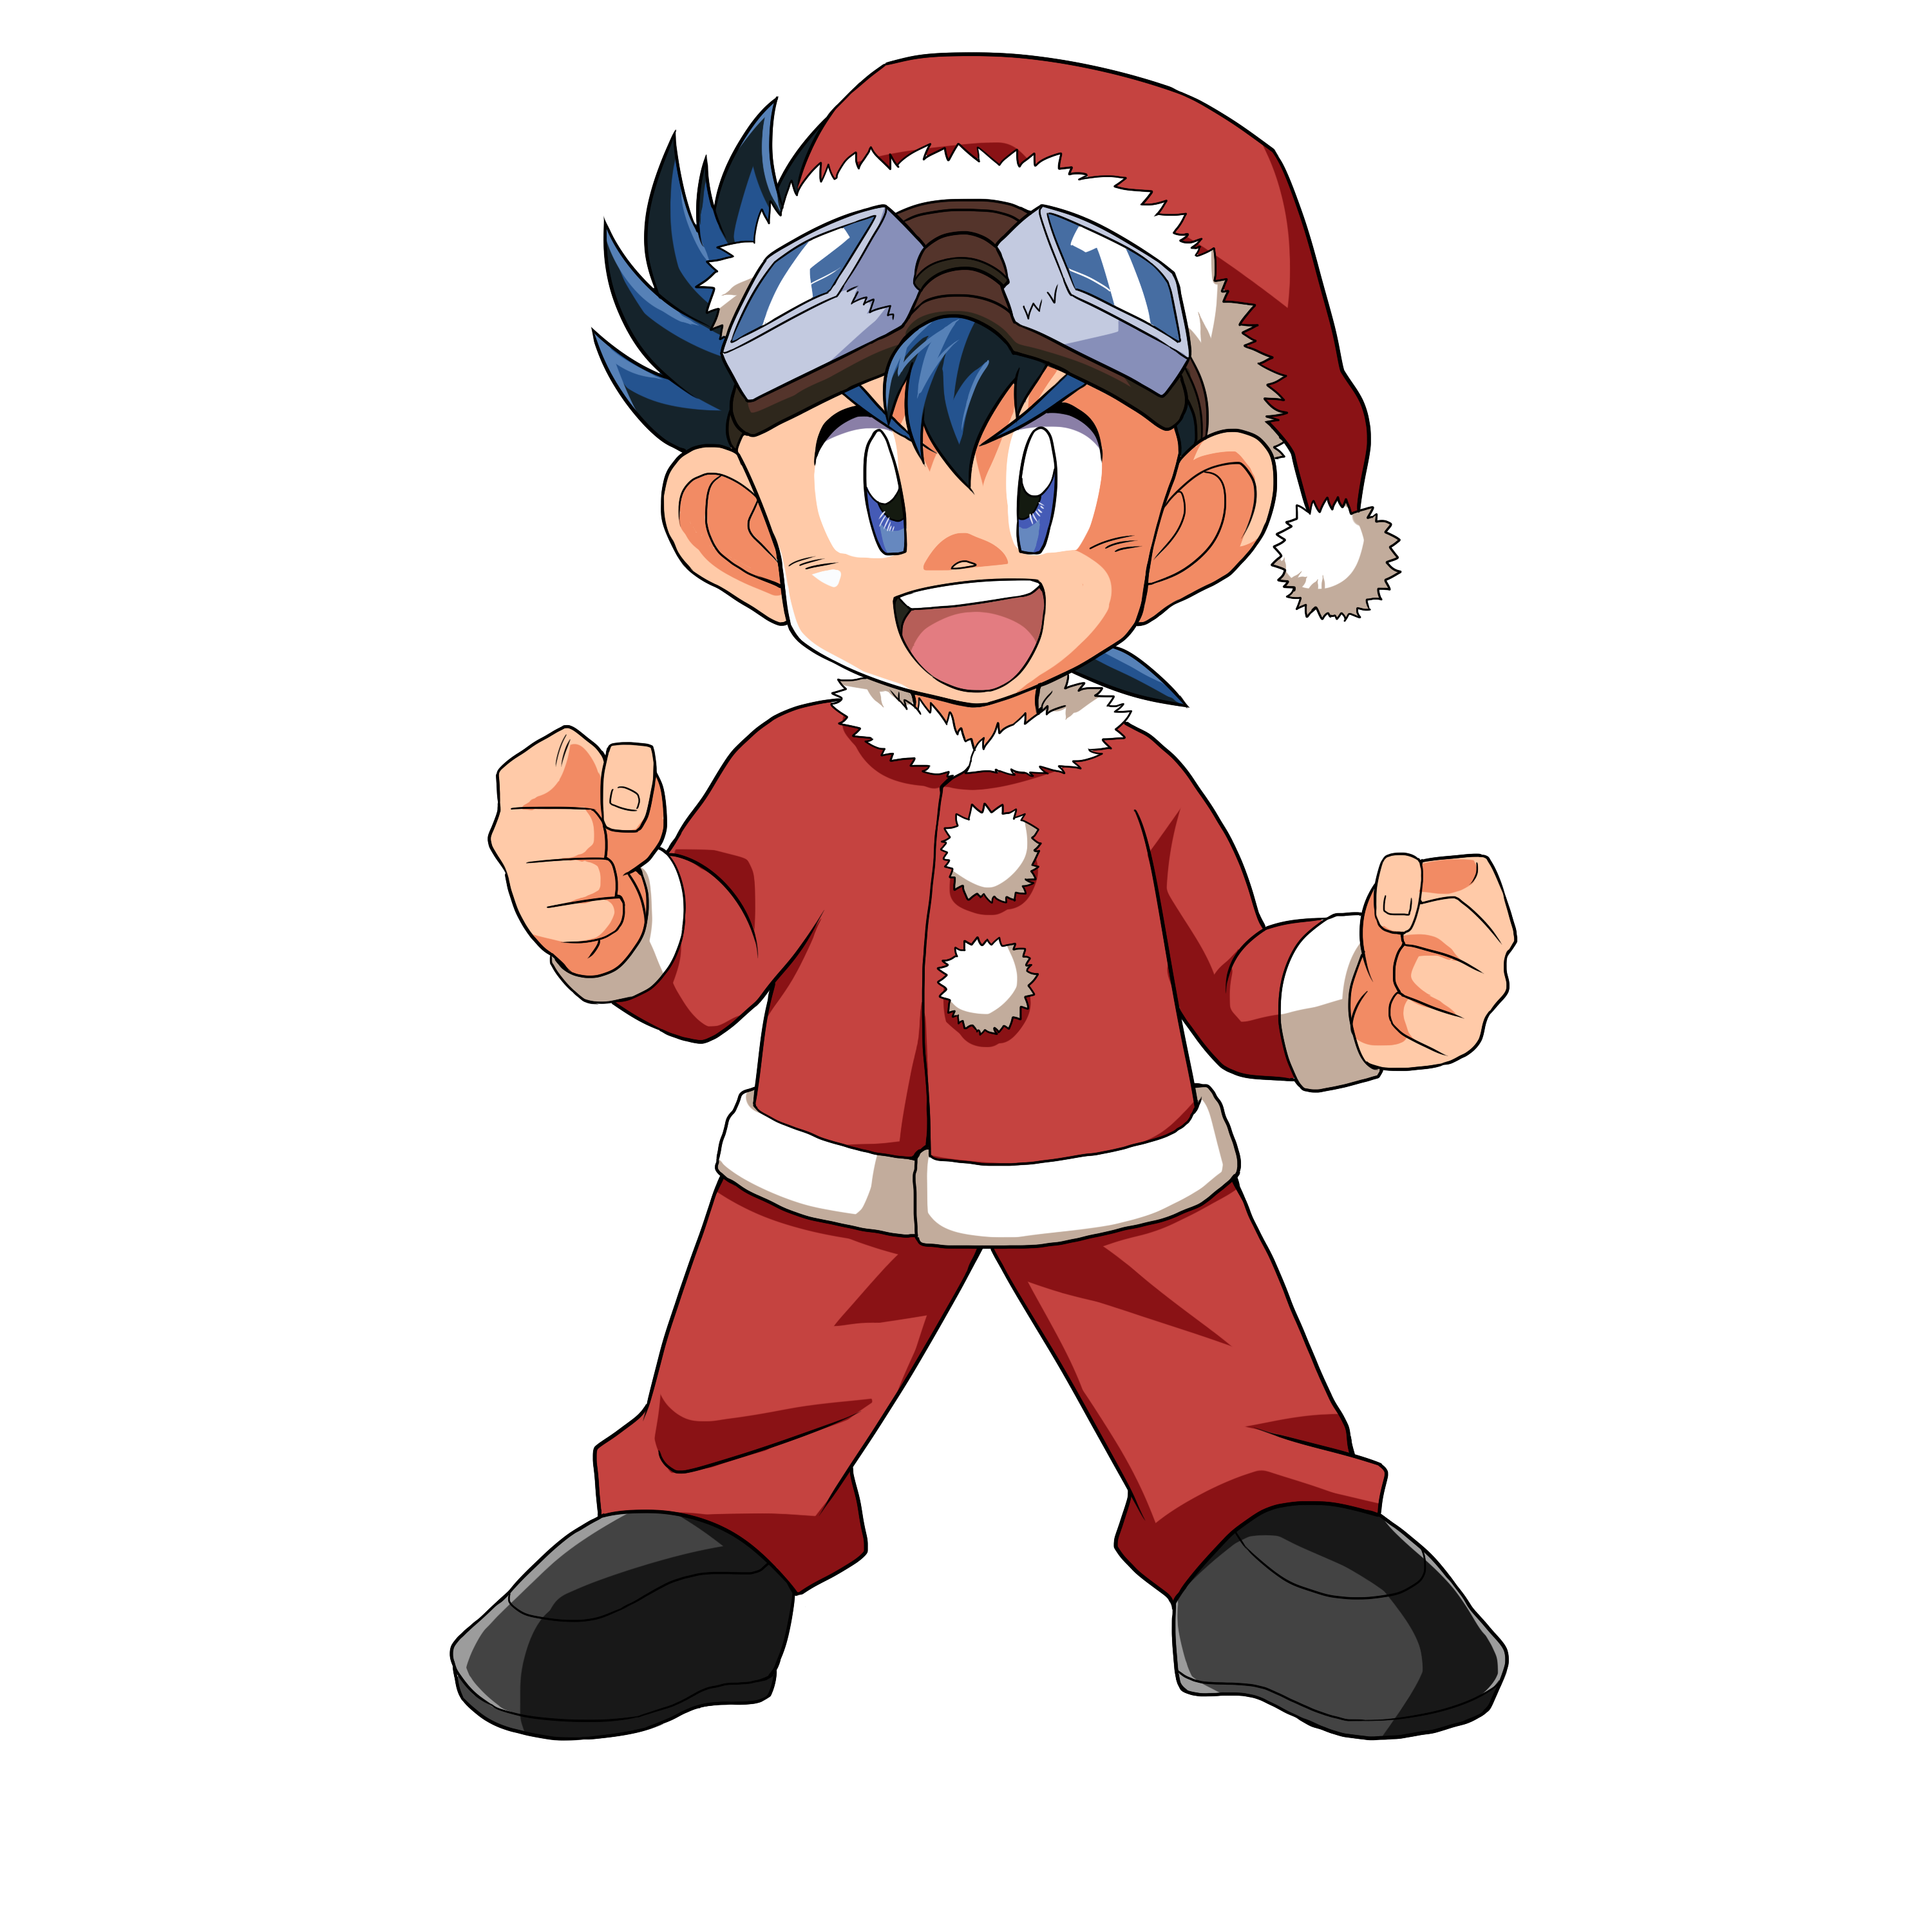 ブシロード 爆走兄弟レッツ ゴー ミニ四駆ワールドランナー でクリスマス限定マシンの排出とクリスマスイベントを開催 Social Game Info